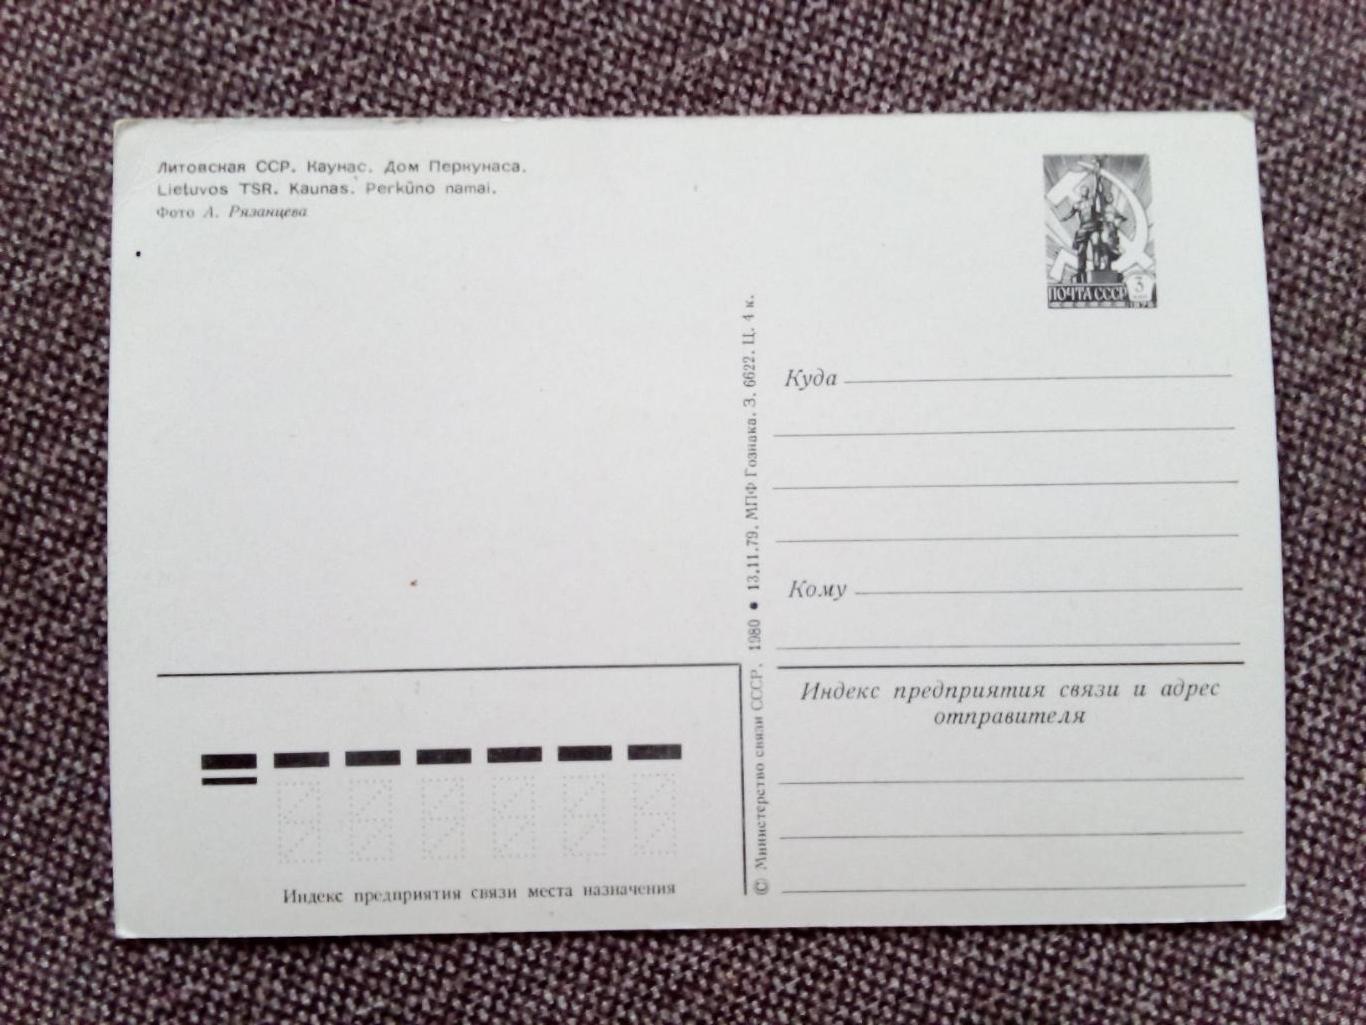 Города СССР : Каунас - Дом Перкунаса 1980 г. (Литва) почтовая открытка с маркой 1